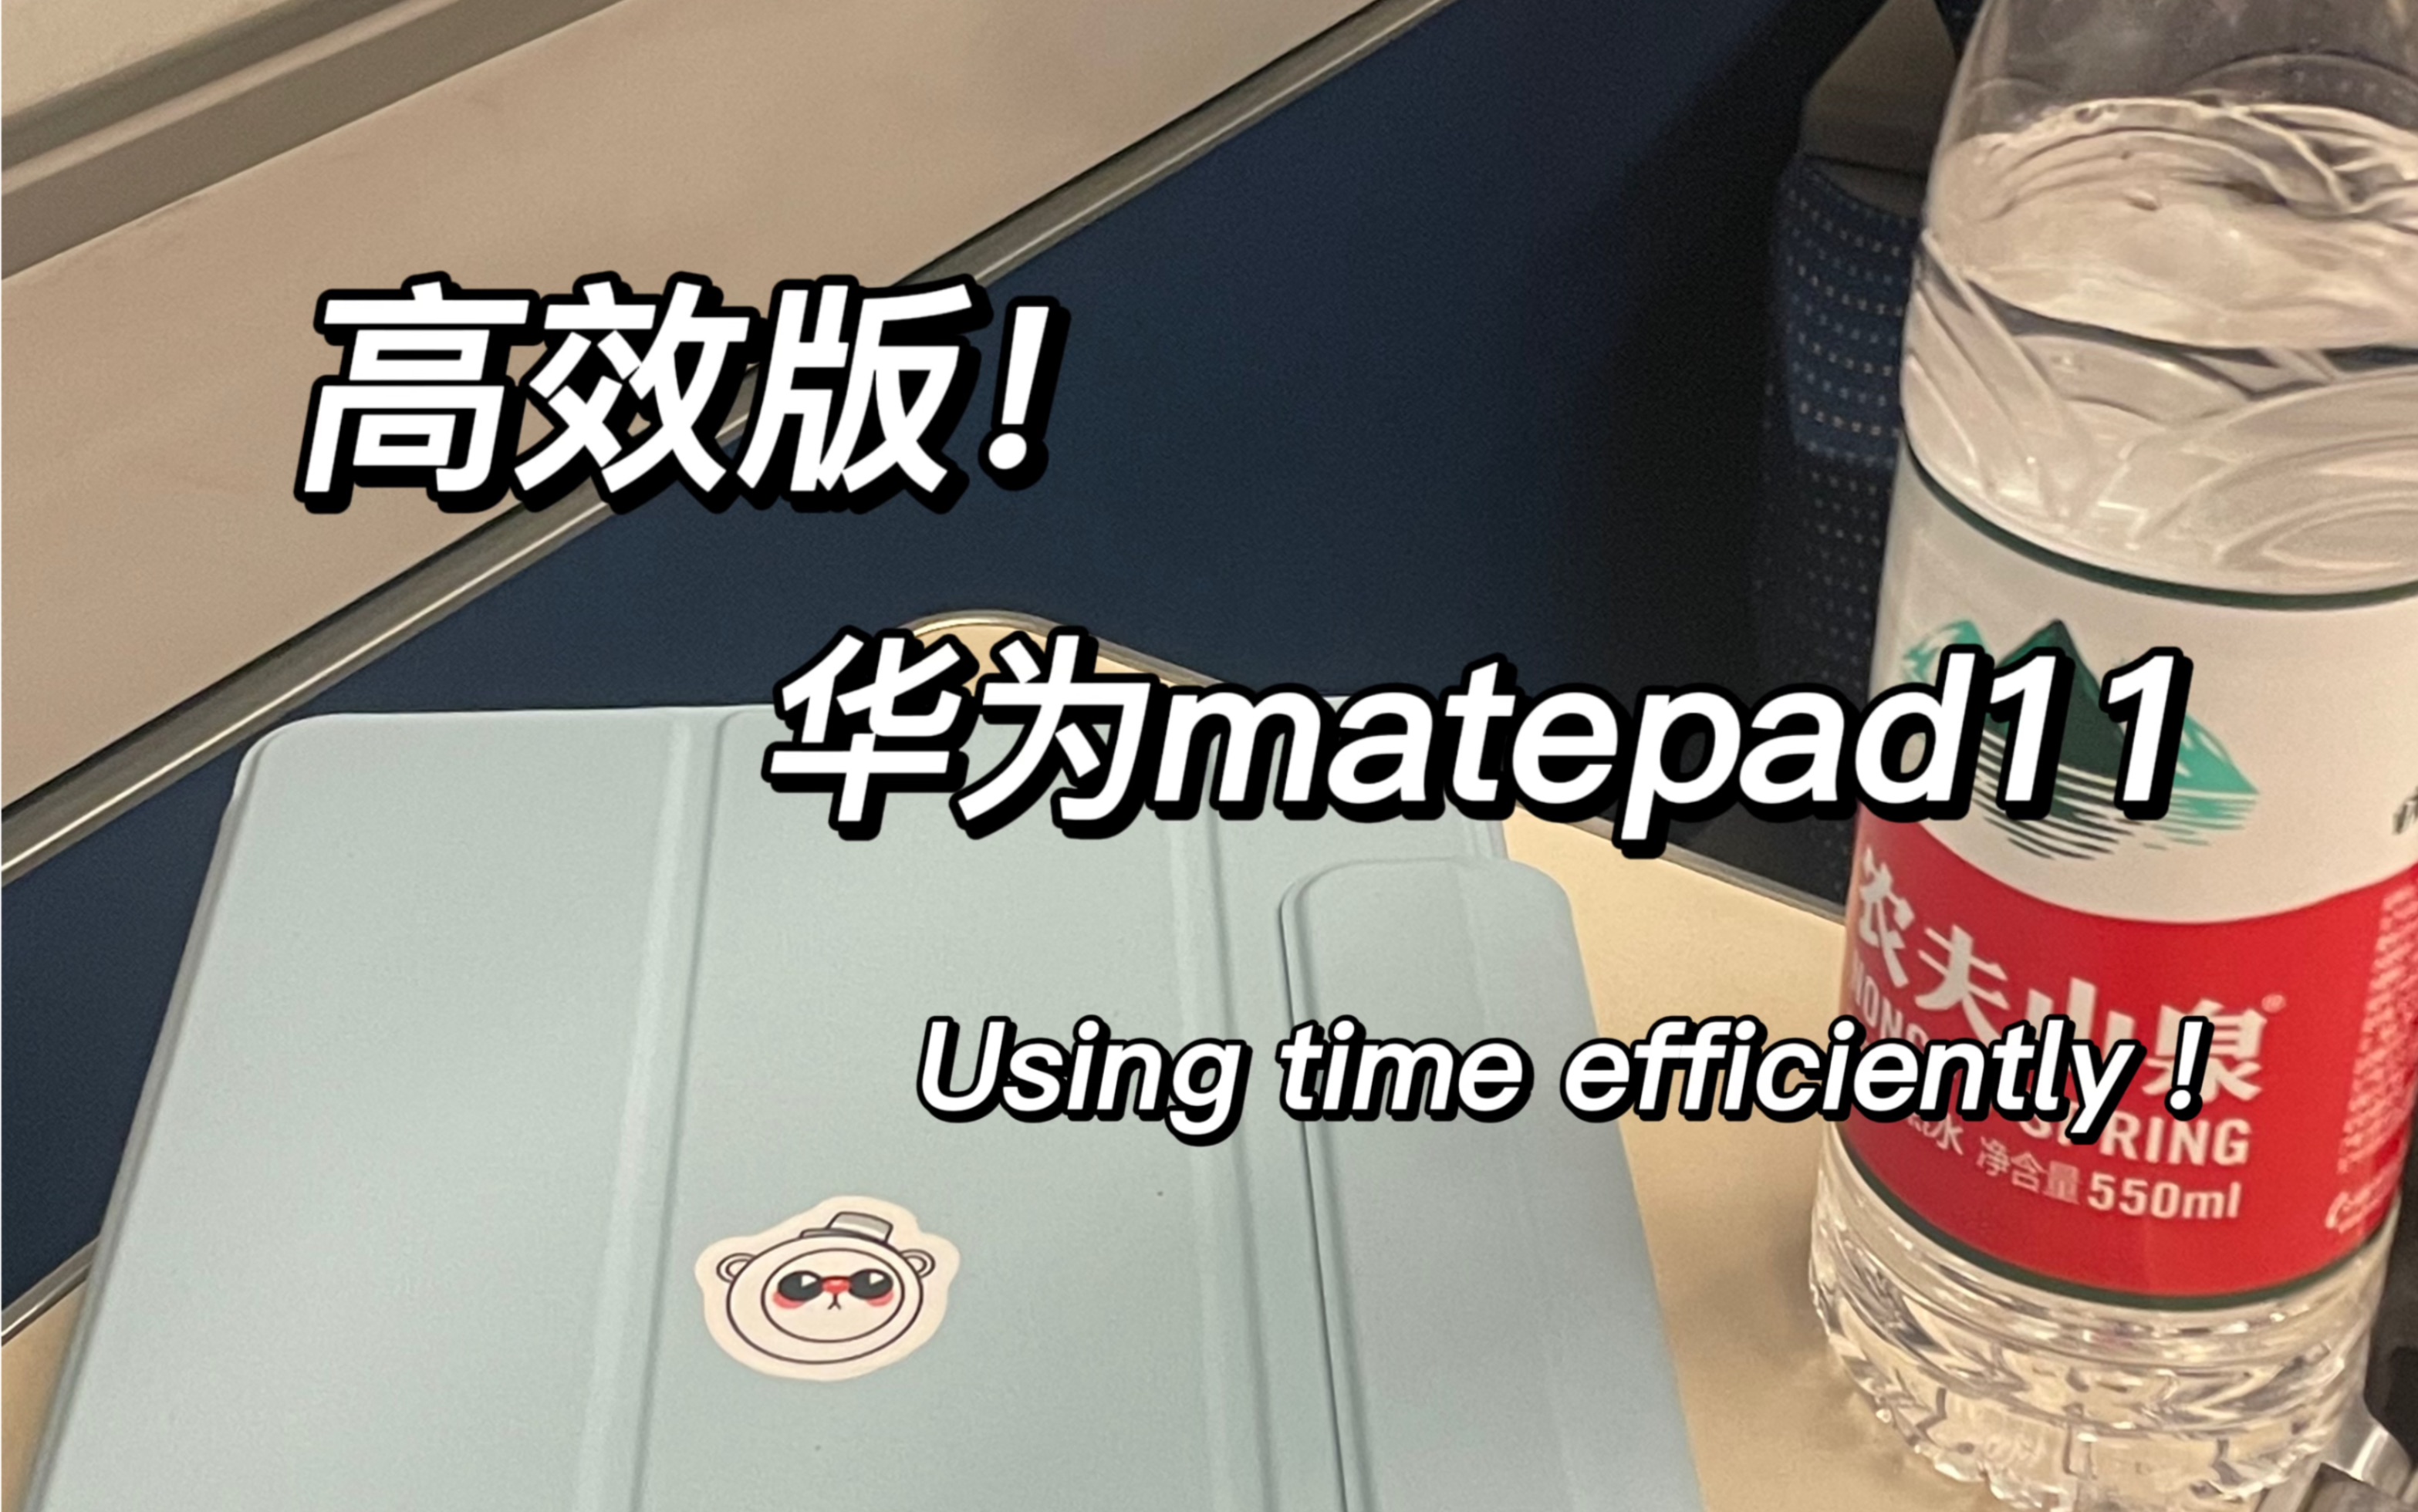 华为matepad11在高铁上搞无纸化学习 真香❗️